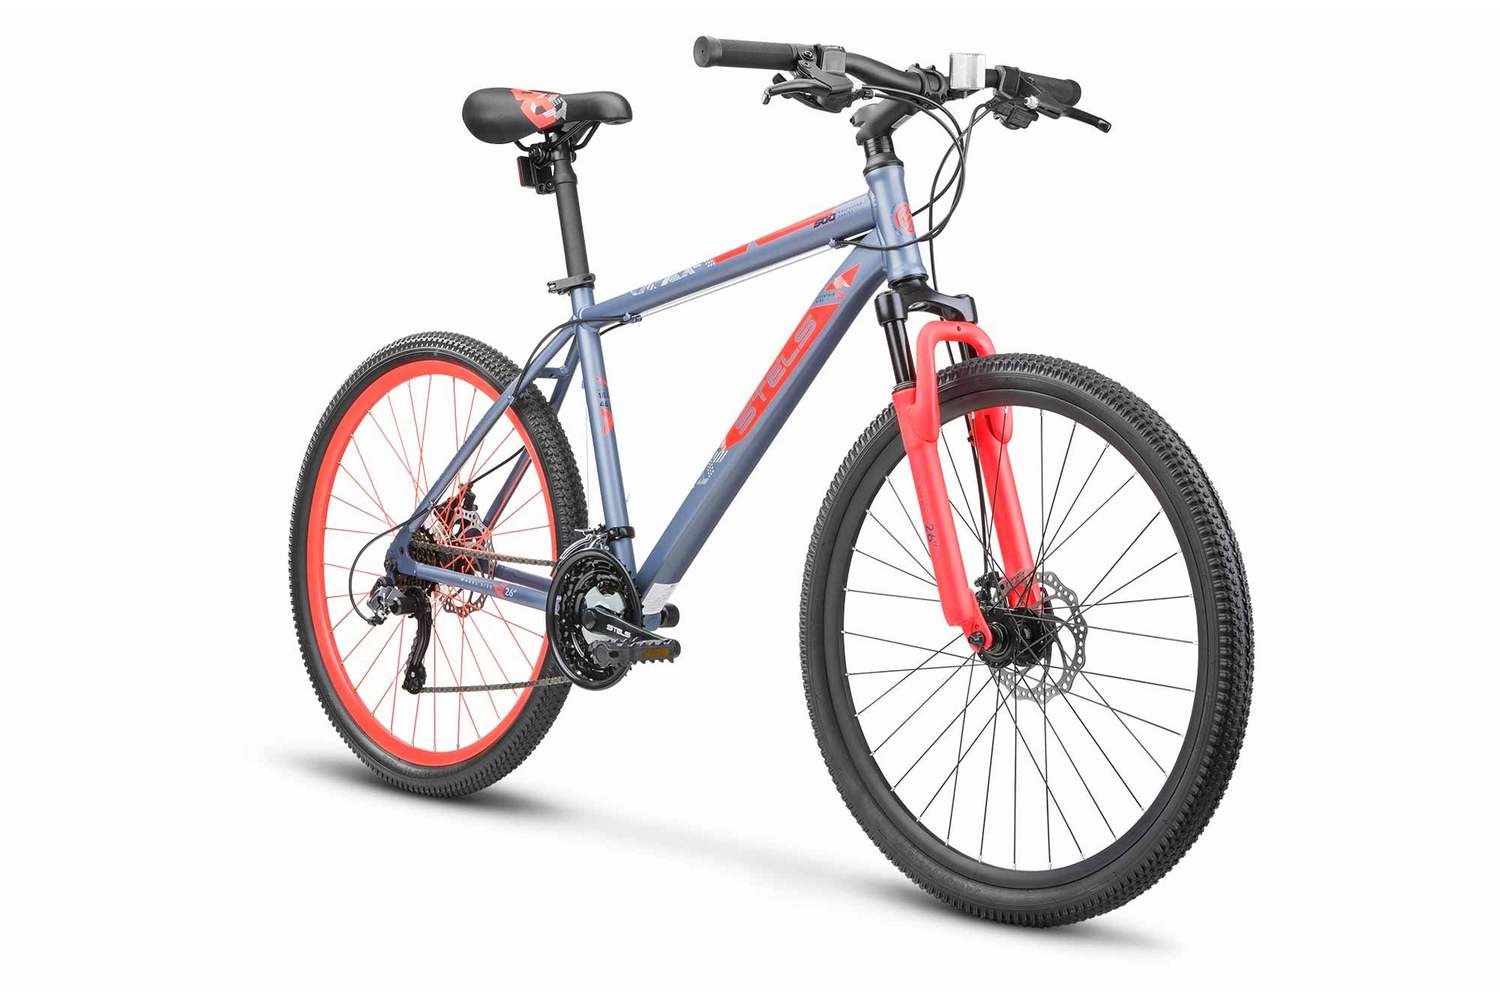 Горный велосипед Stels Navigator 500 MD 26 F020, год 2023, цвет Красный-Синий, ростовка 20